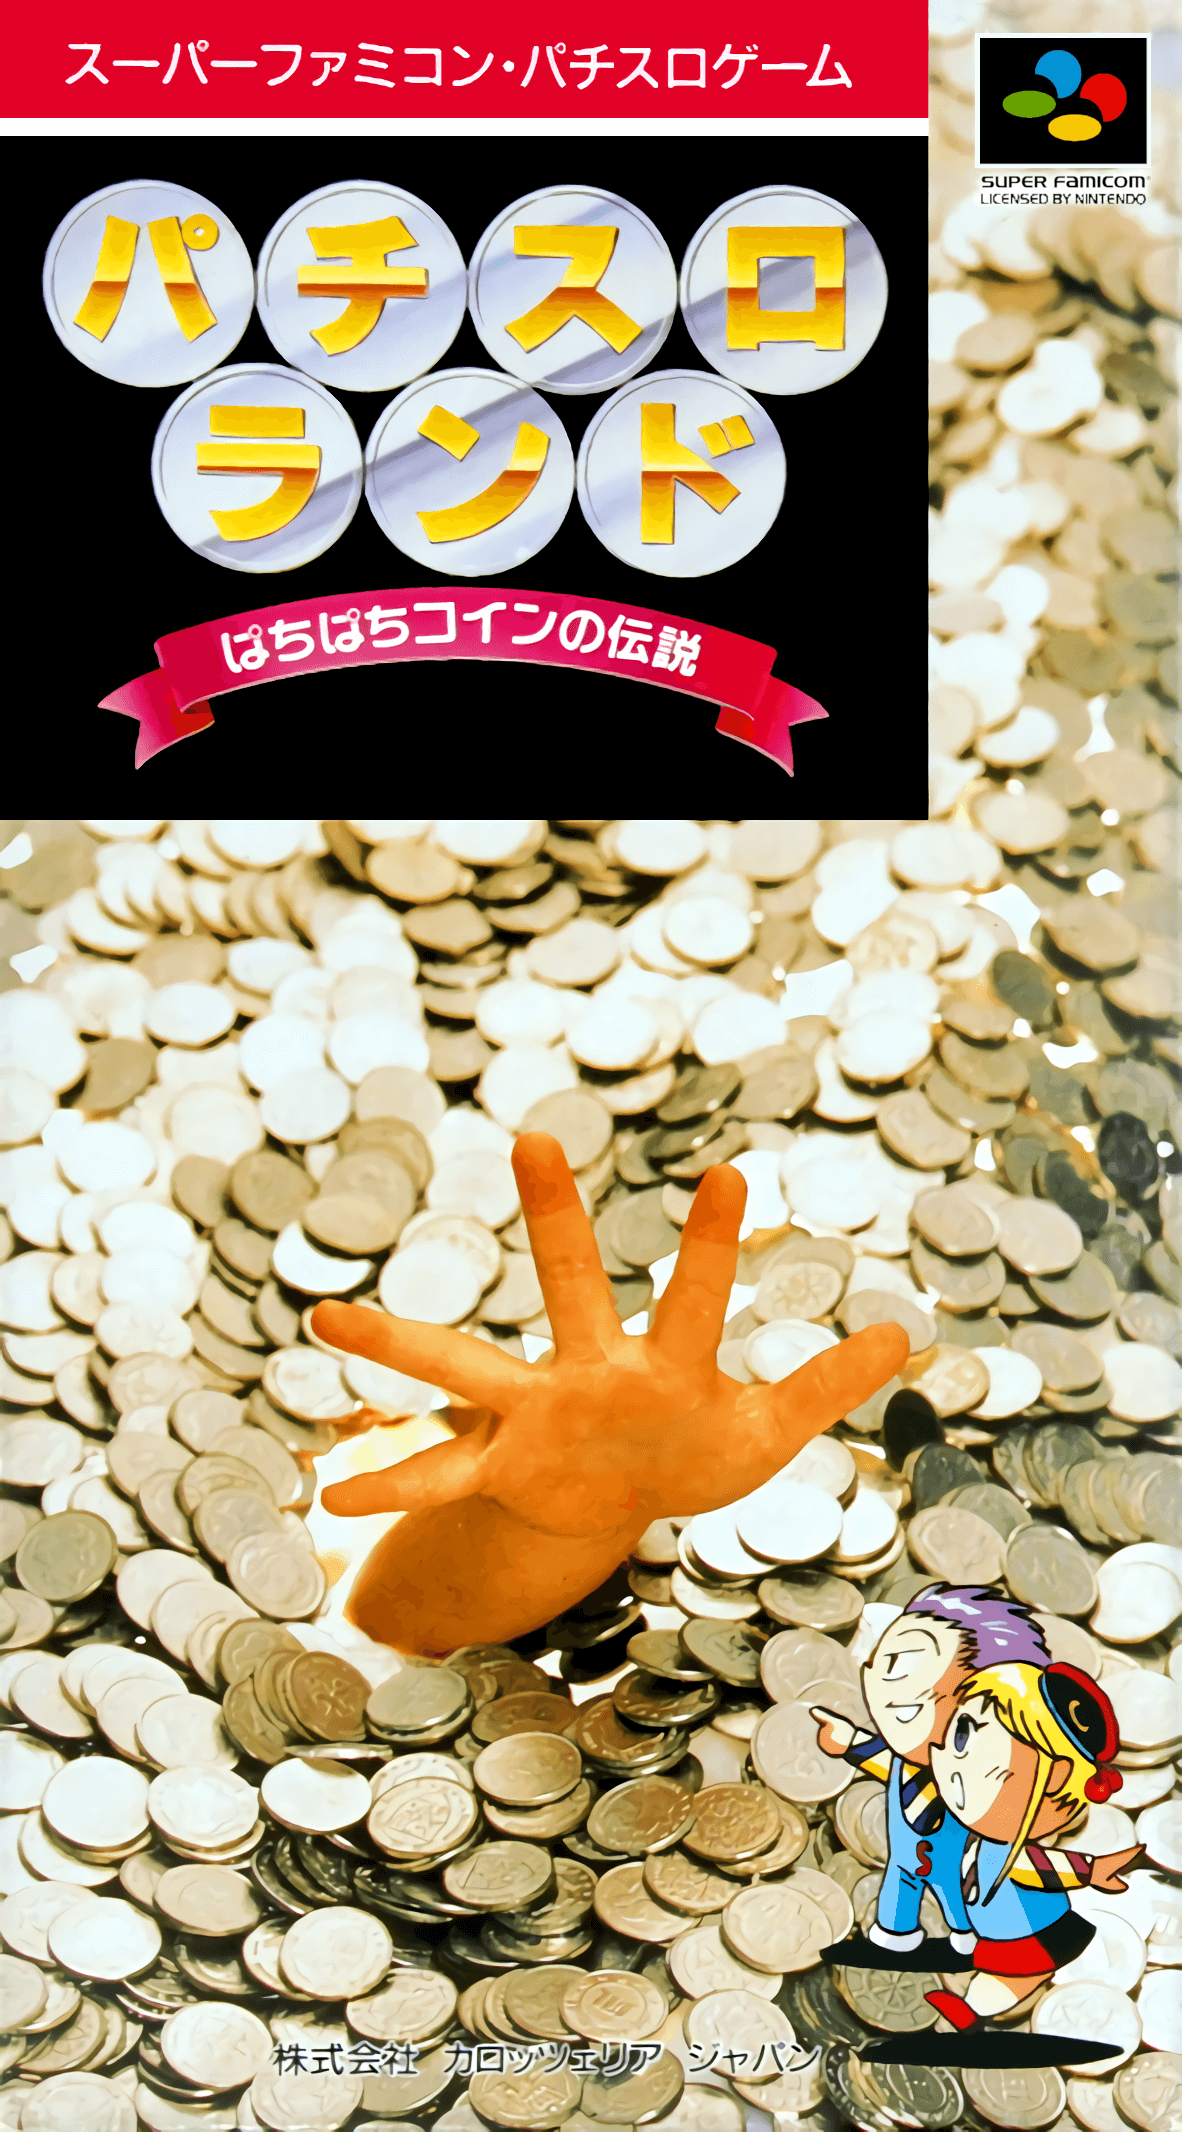 Pachi-Slot Land: Pachi Pachi Coin no Densetsu